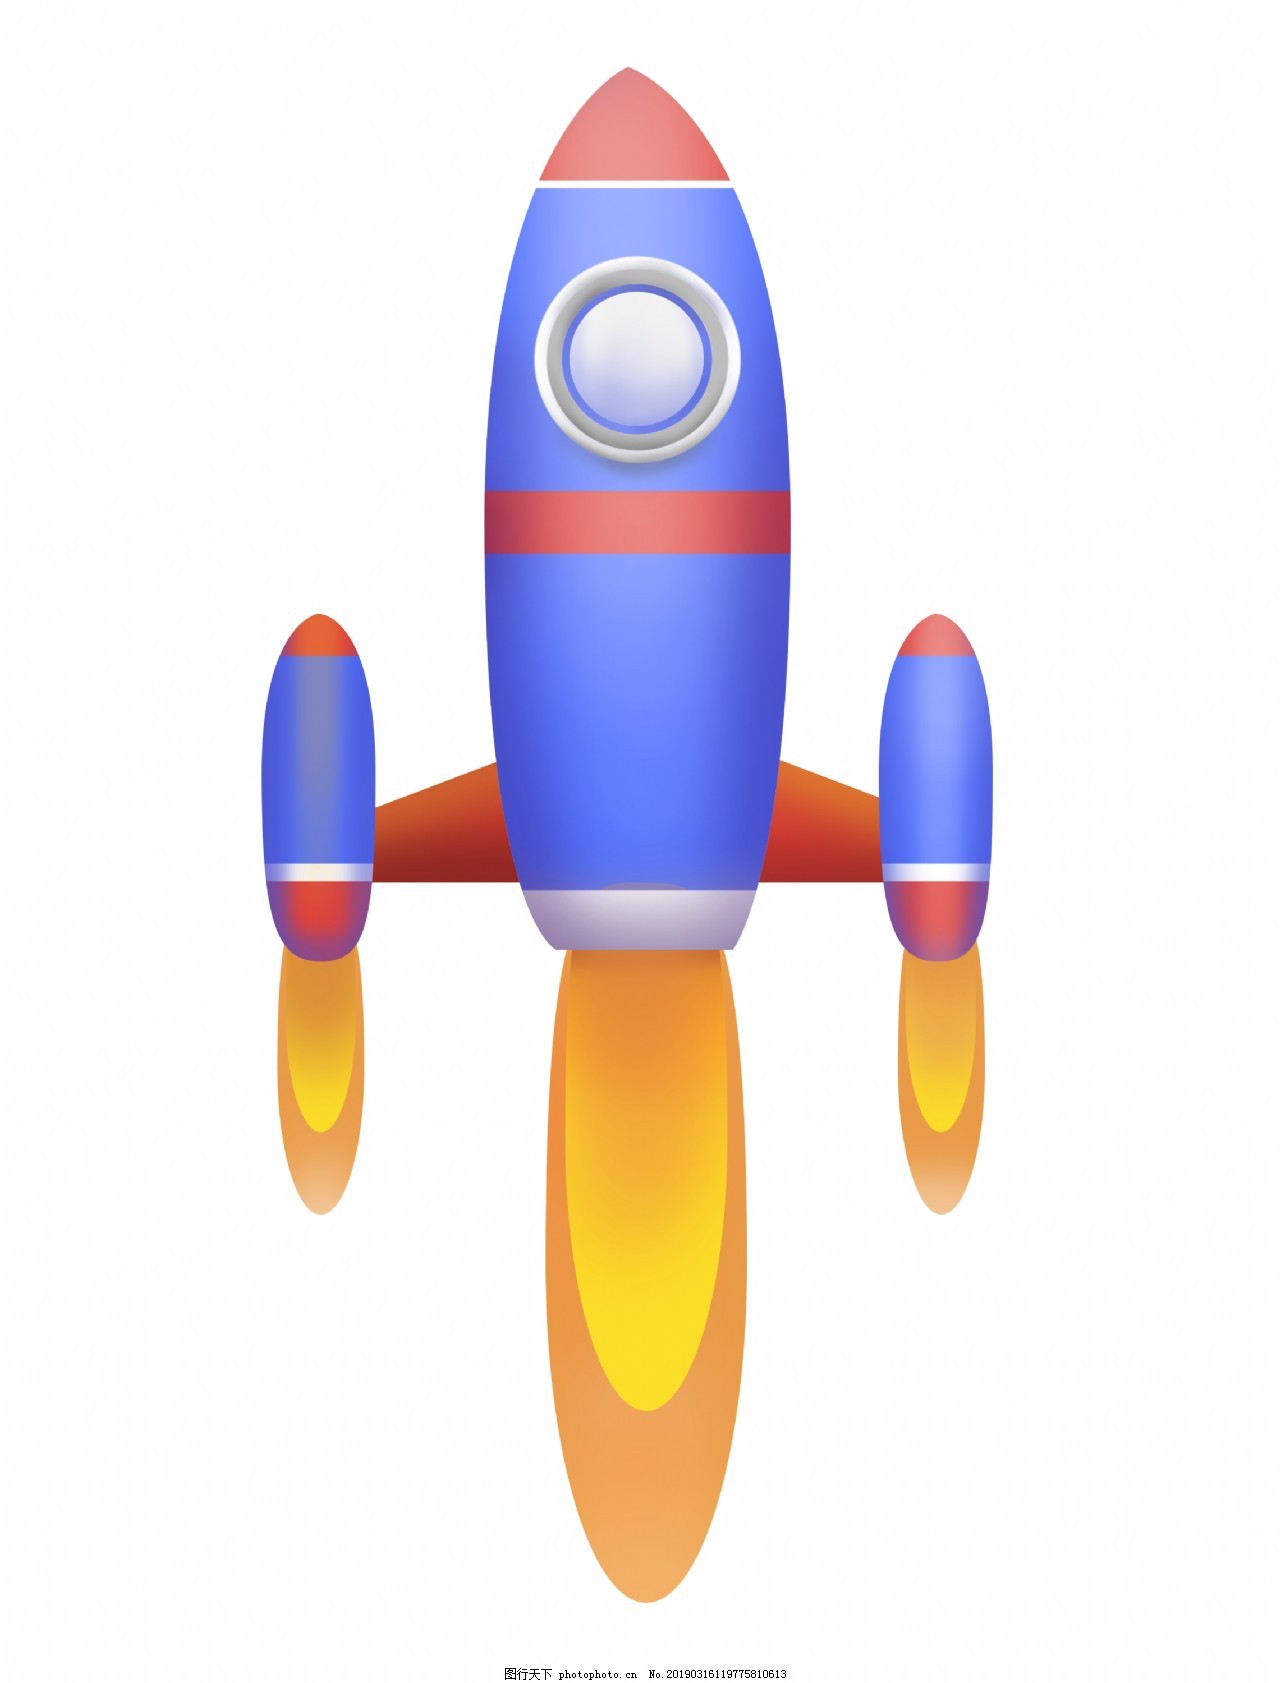 卡通火箭插图(火箭、火箭筒、飞行、卡通、色彩搭配)手绘插图_北极熊素材库